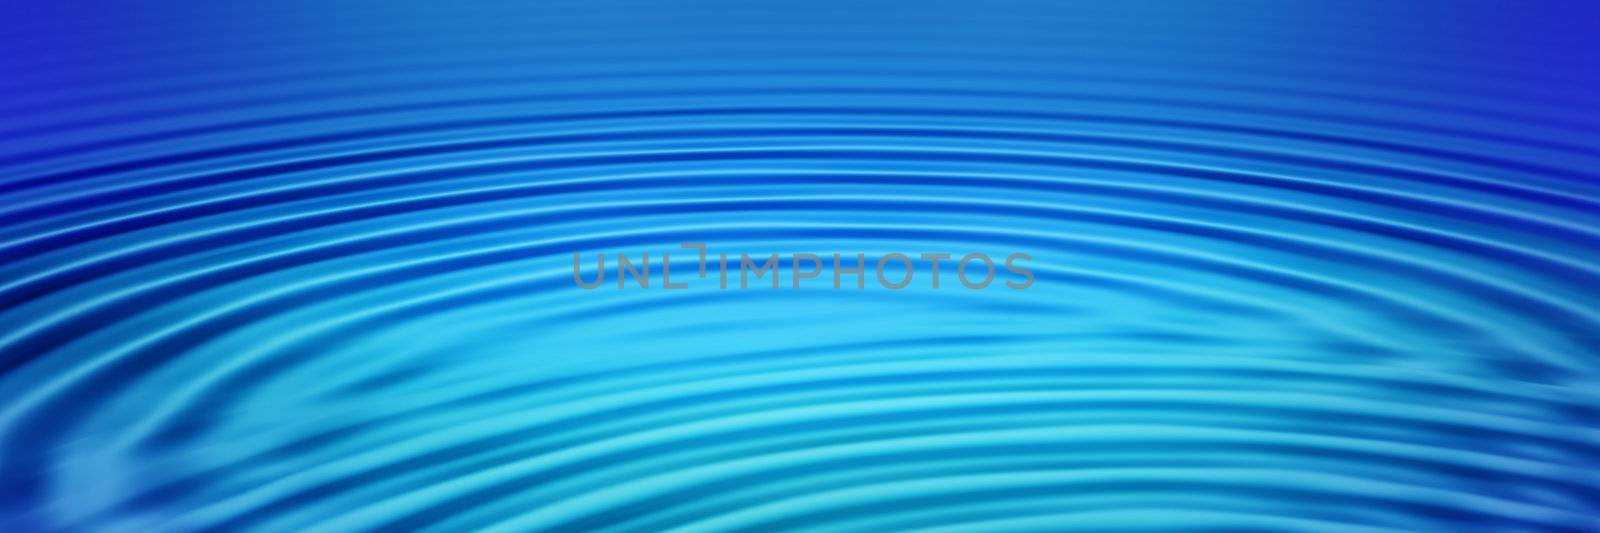 elegant big blue concentric ripples on a banner or header

